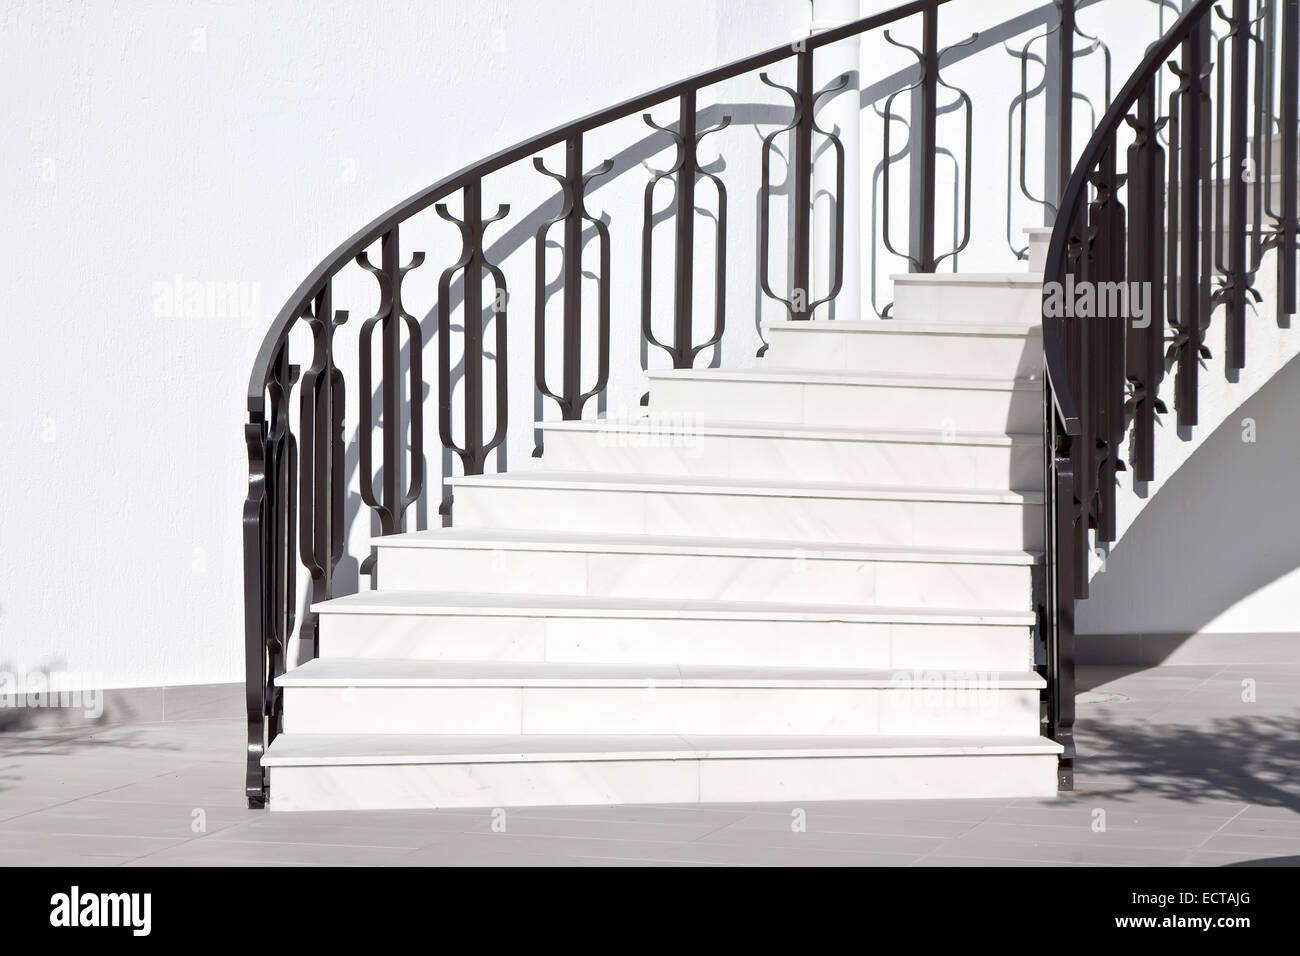 Les escaliers blanc et noir clôture ornés Banque D'Images